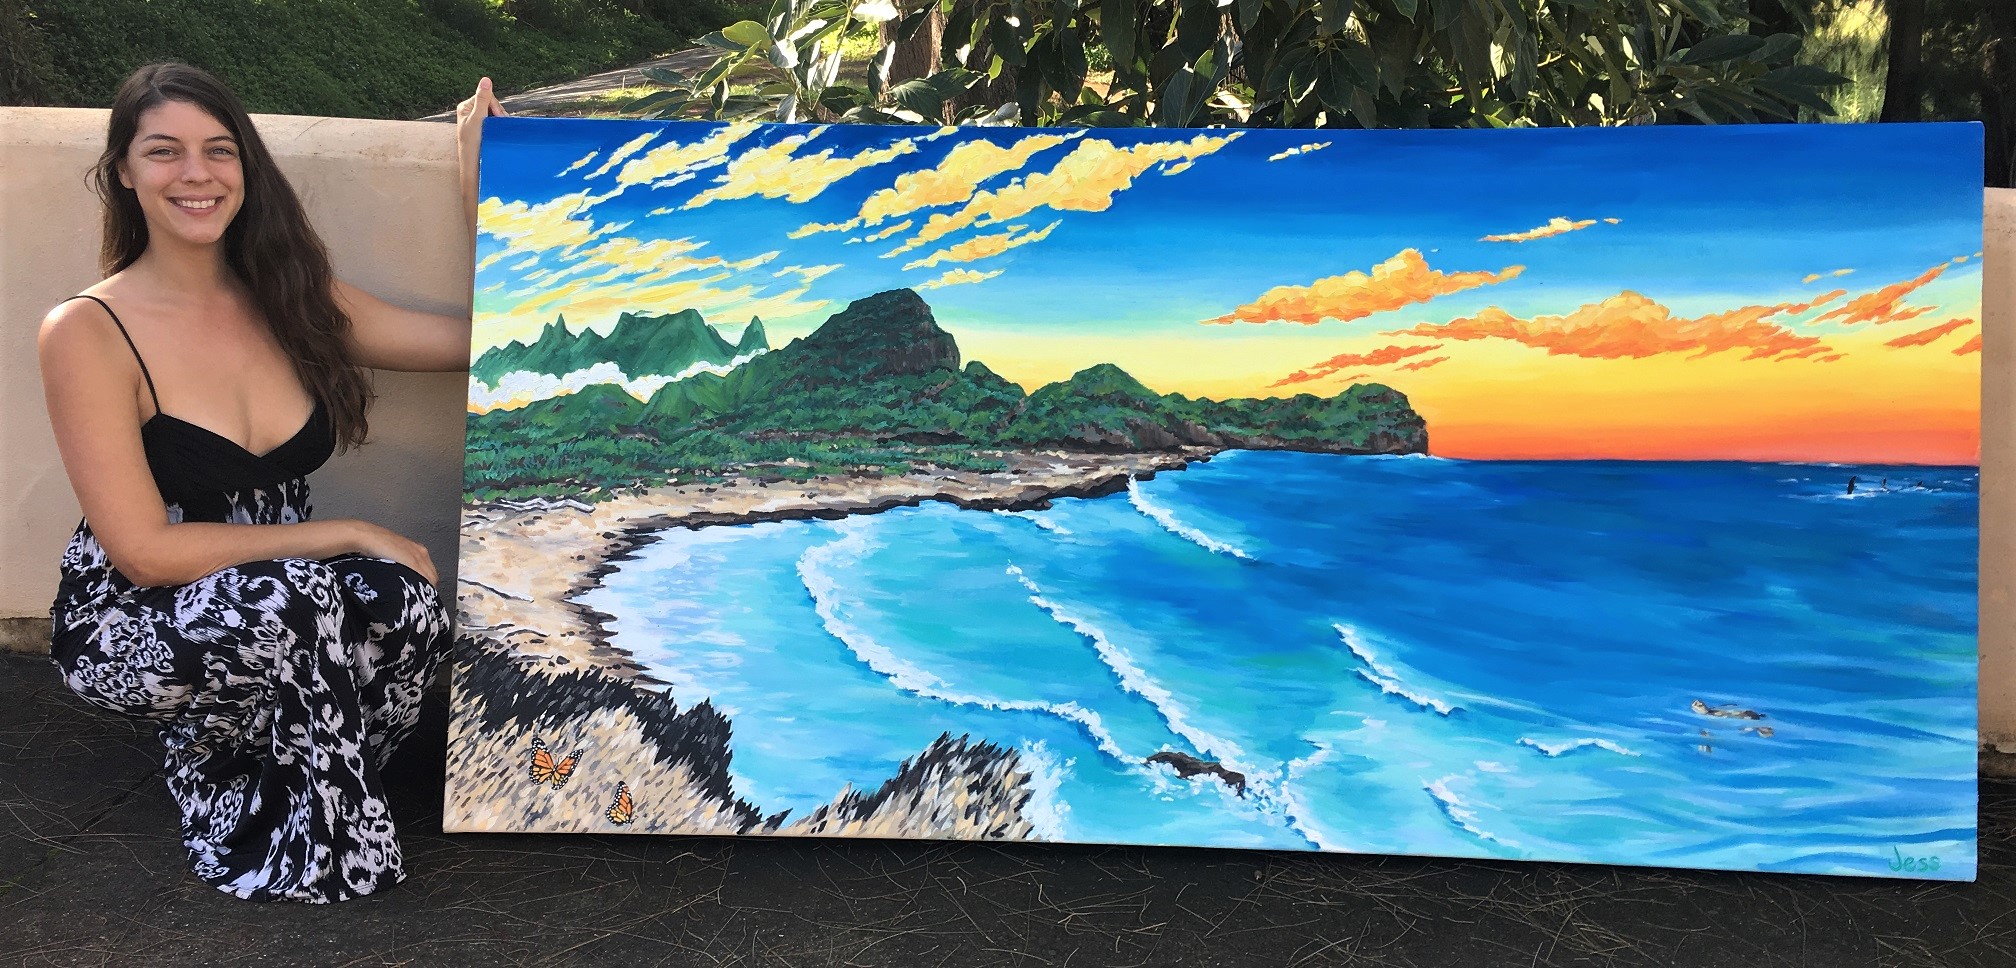 Kauai, oil on canvas, 3x6 ft, Jessica Siemens 2017